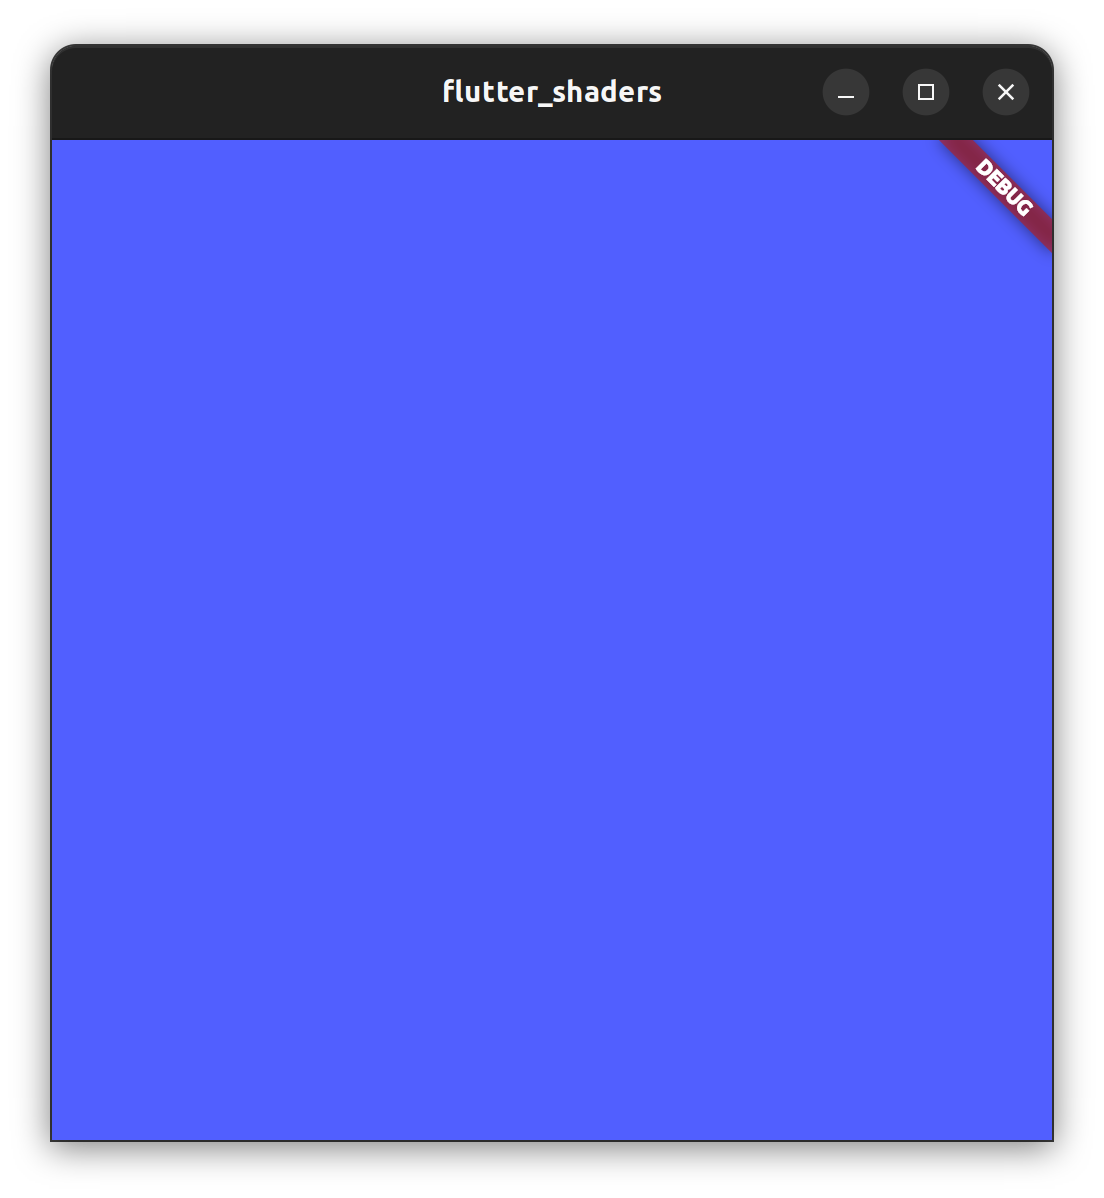 screenshot of a Flutter shader helloworld example app